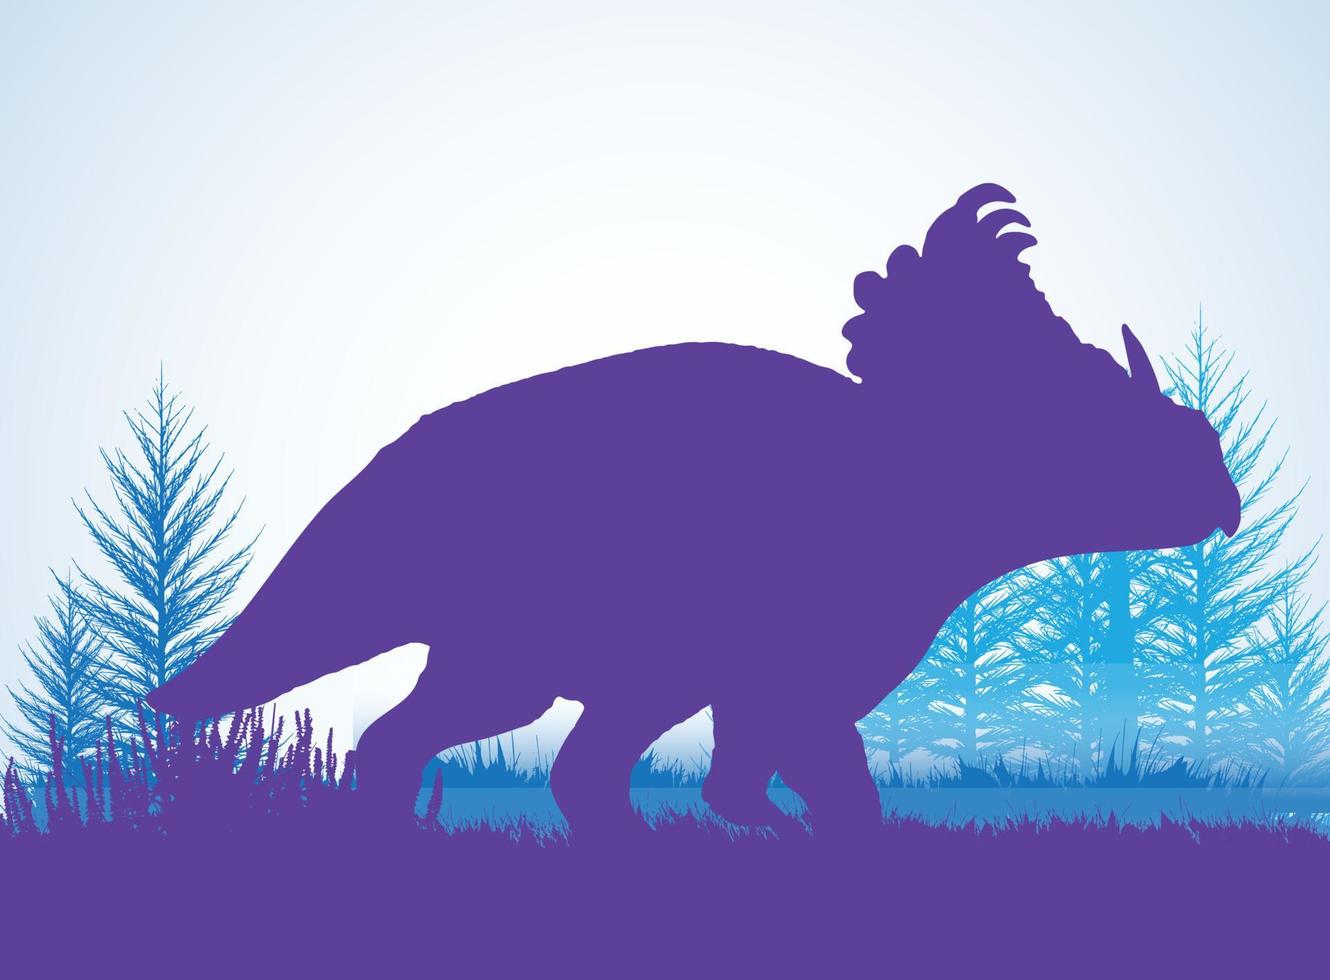 sinoceratops sagome di dinosauri in ambiente preistorico strati sovrapposti sfondo decorativo banner illustrazione vettoriale astratta